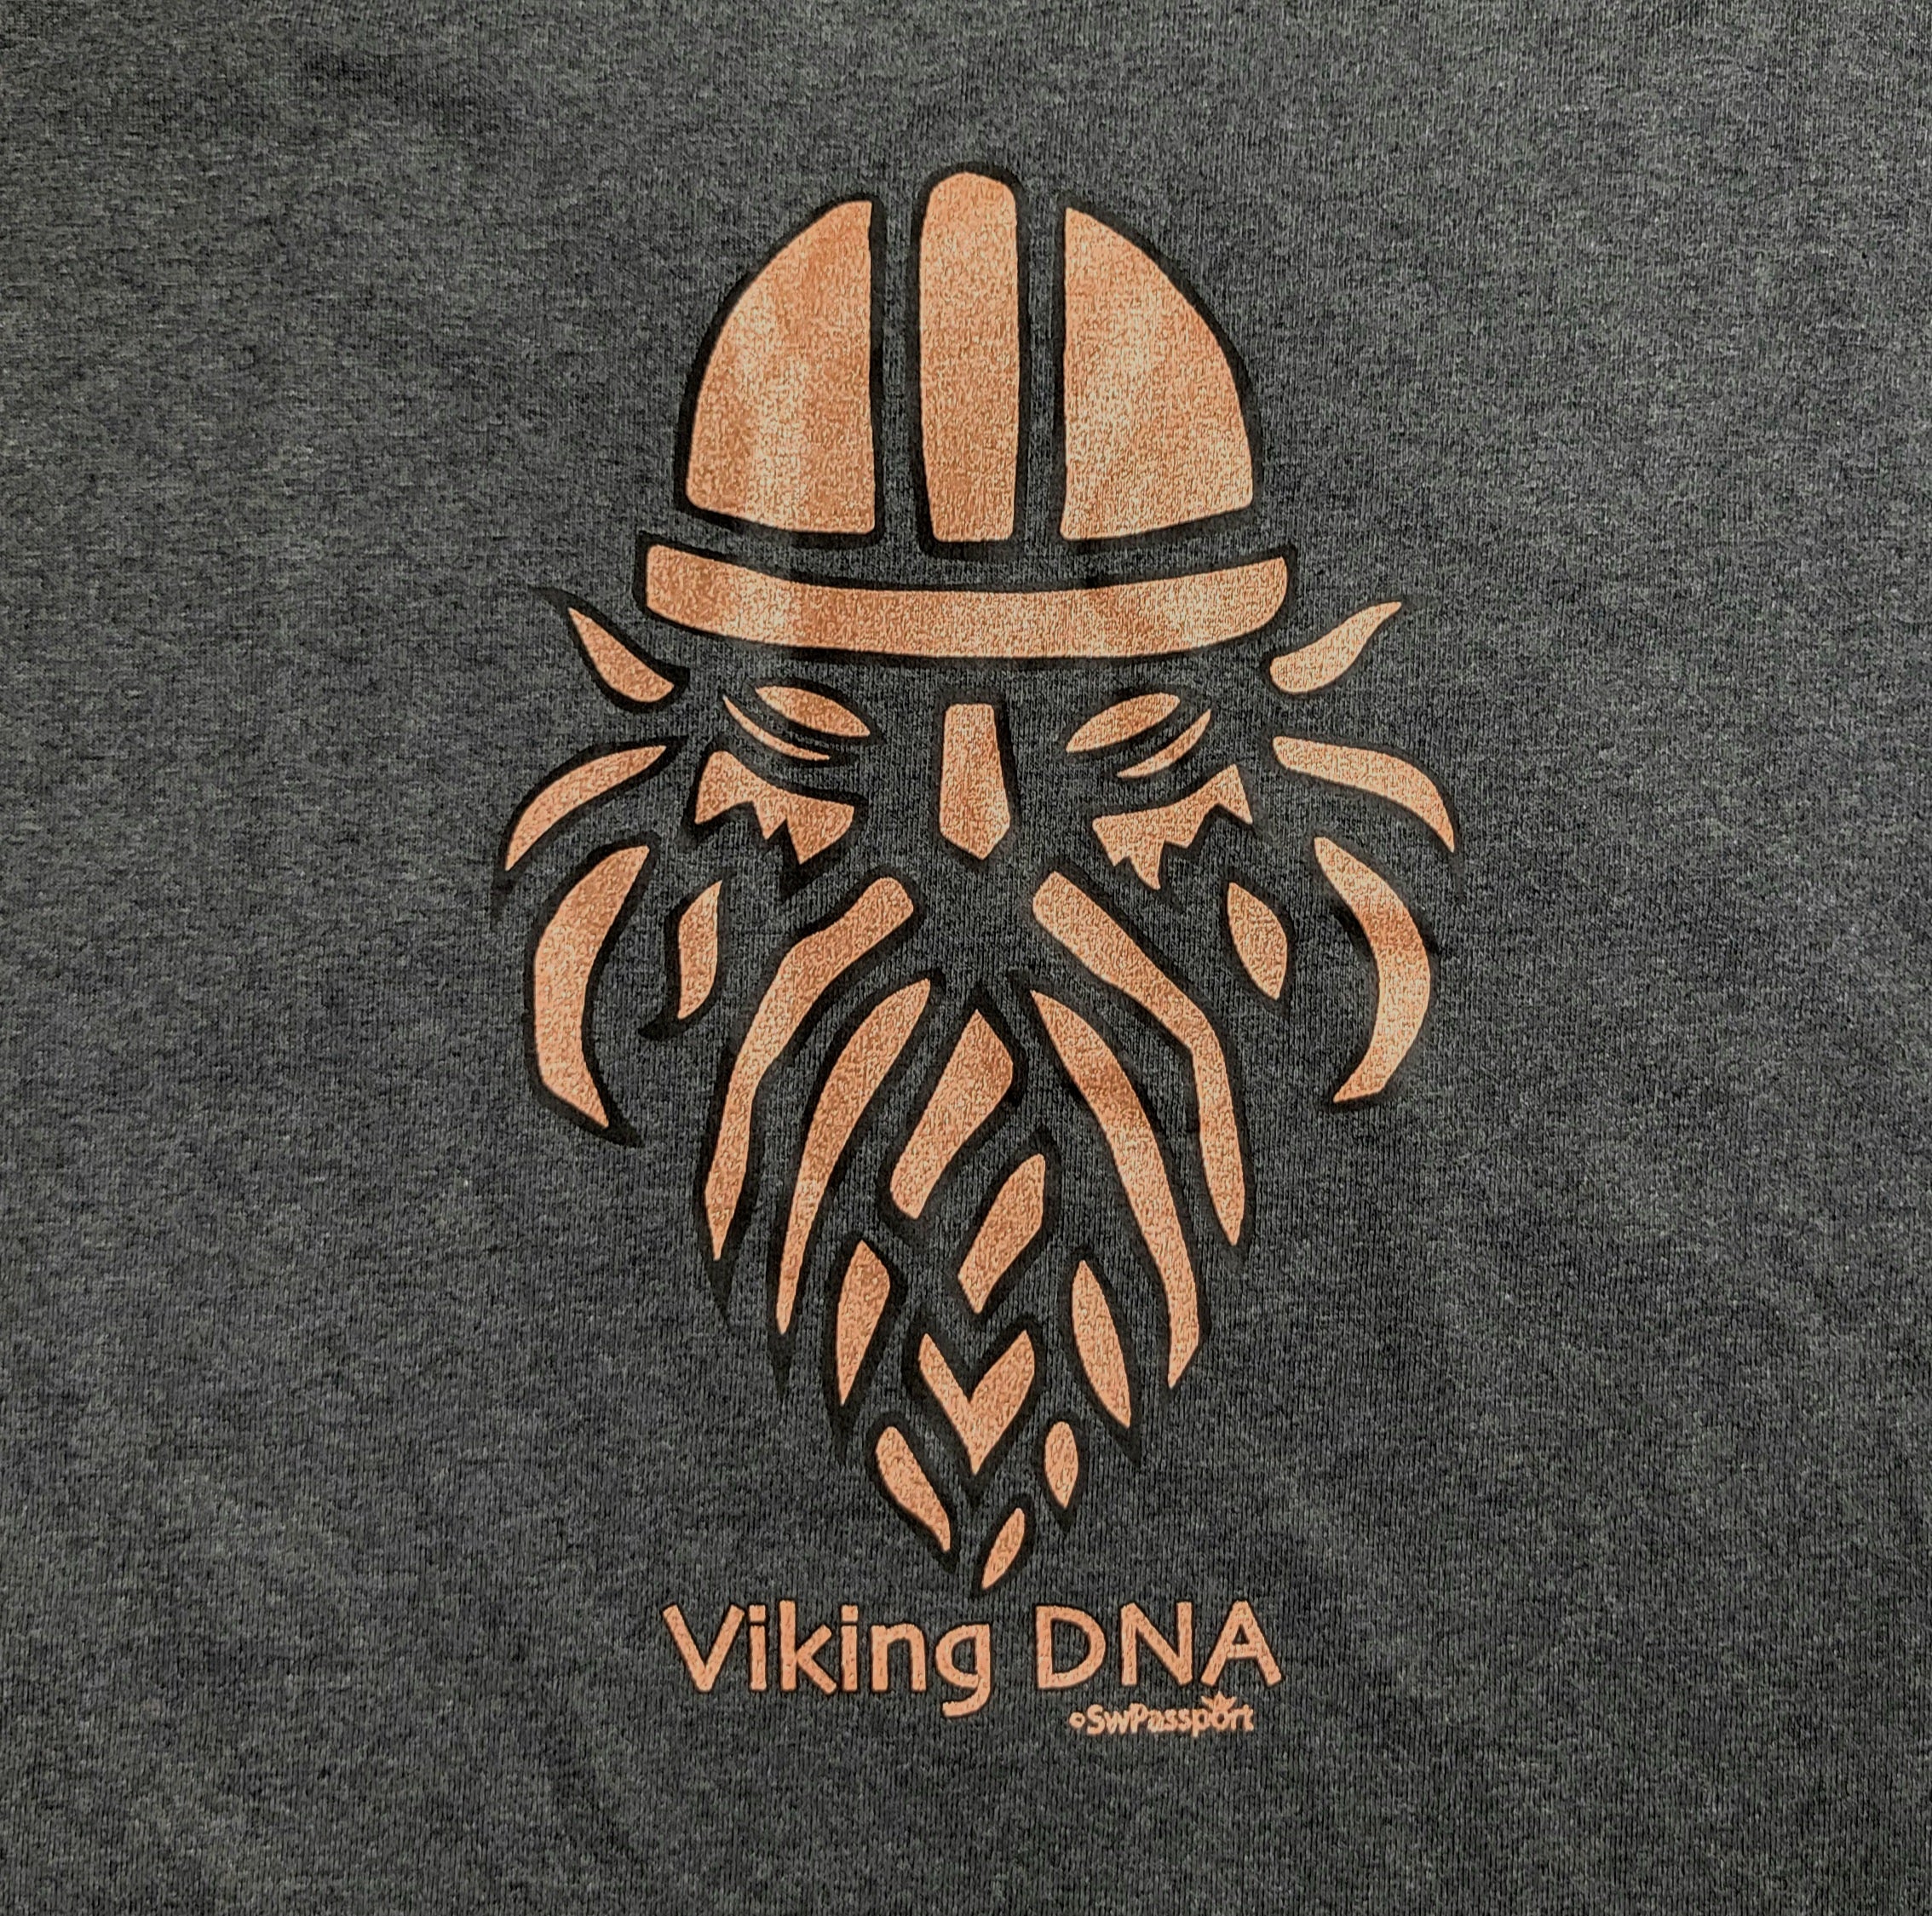 Tee: "Viking DNA"